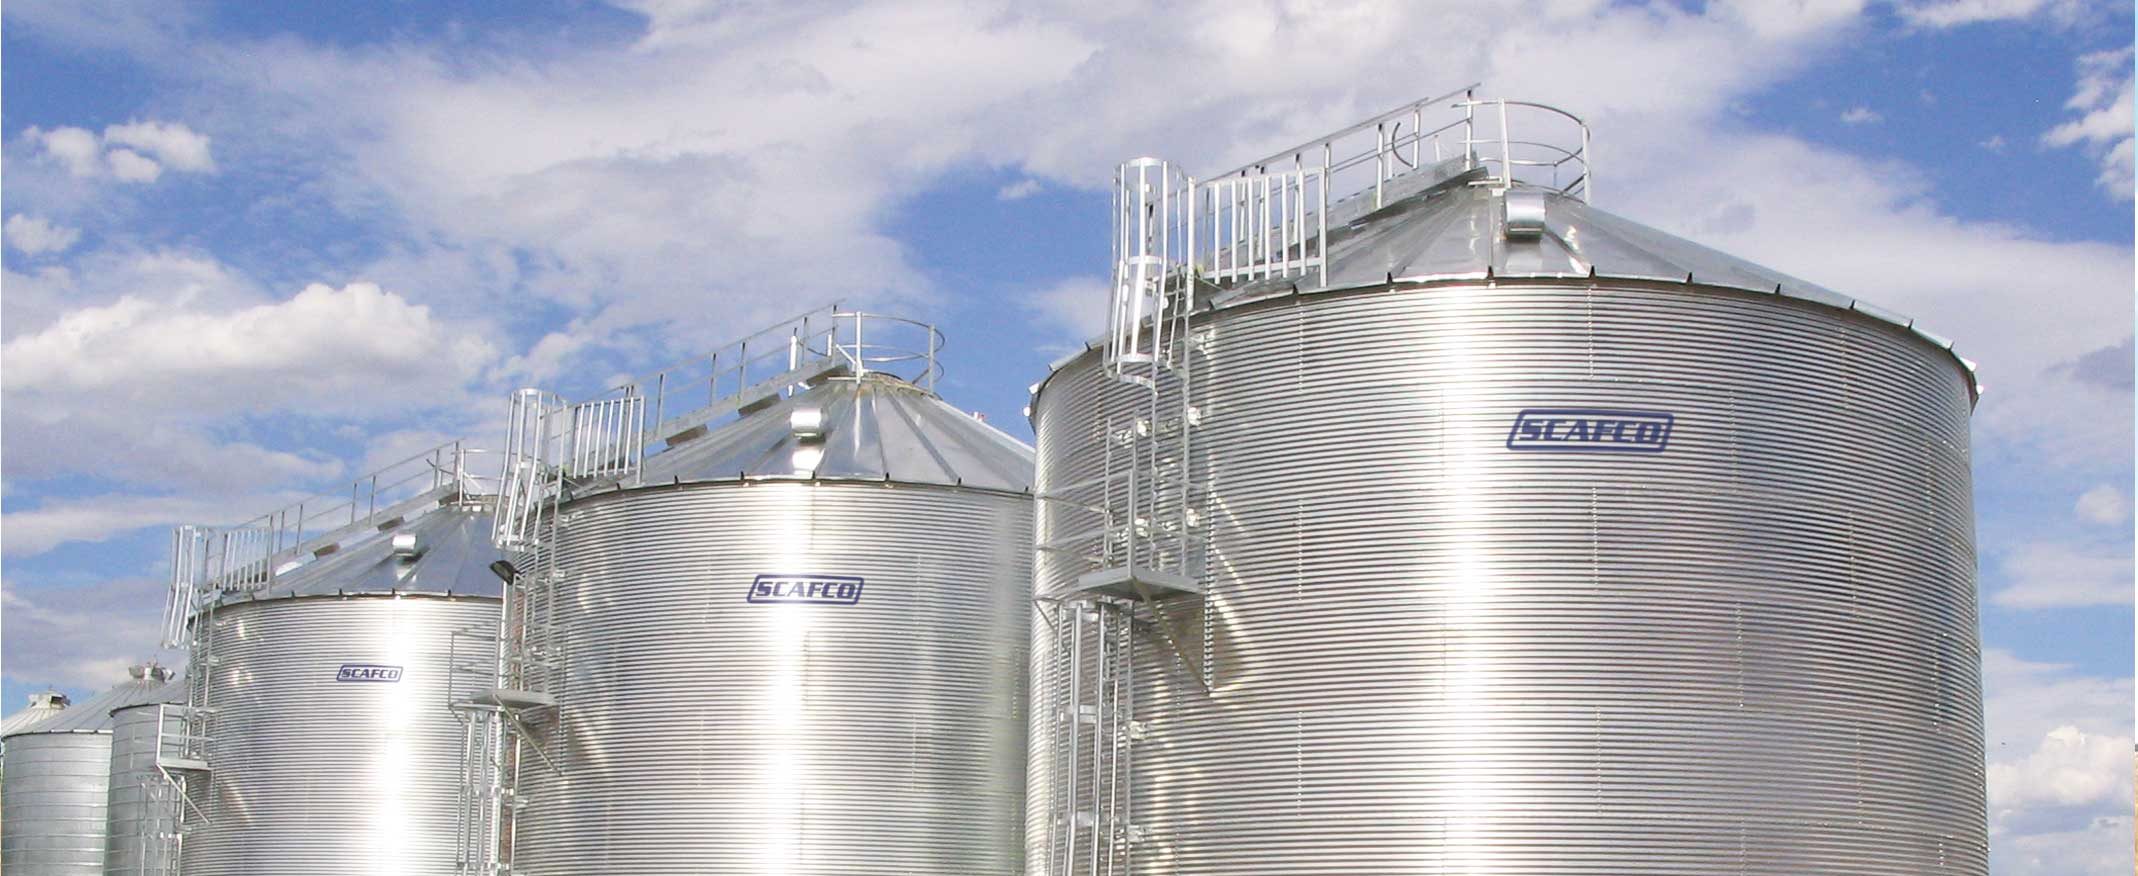 SCAFCO Farm Grain Bins